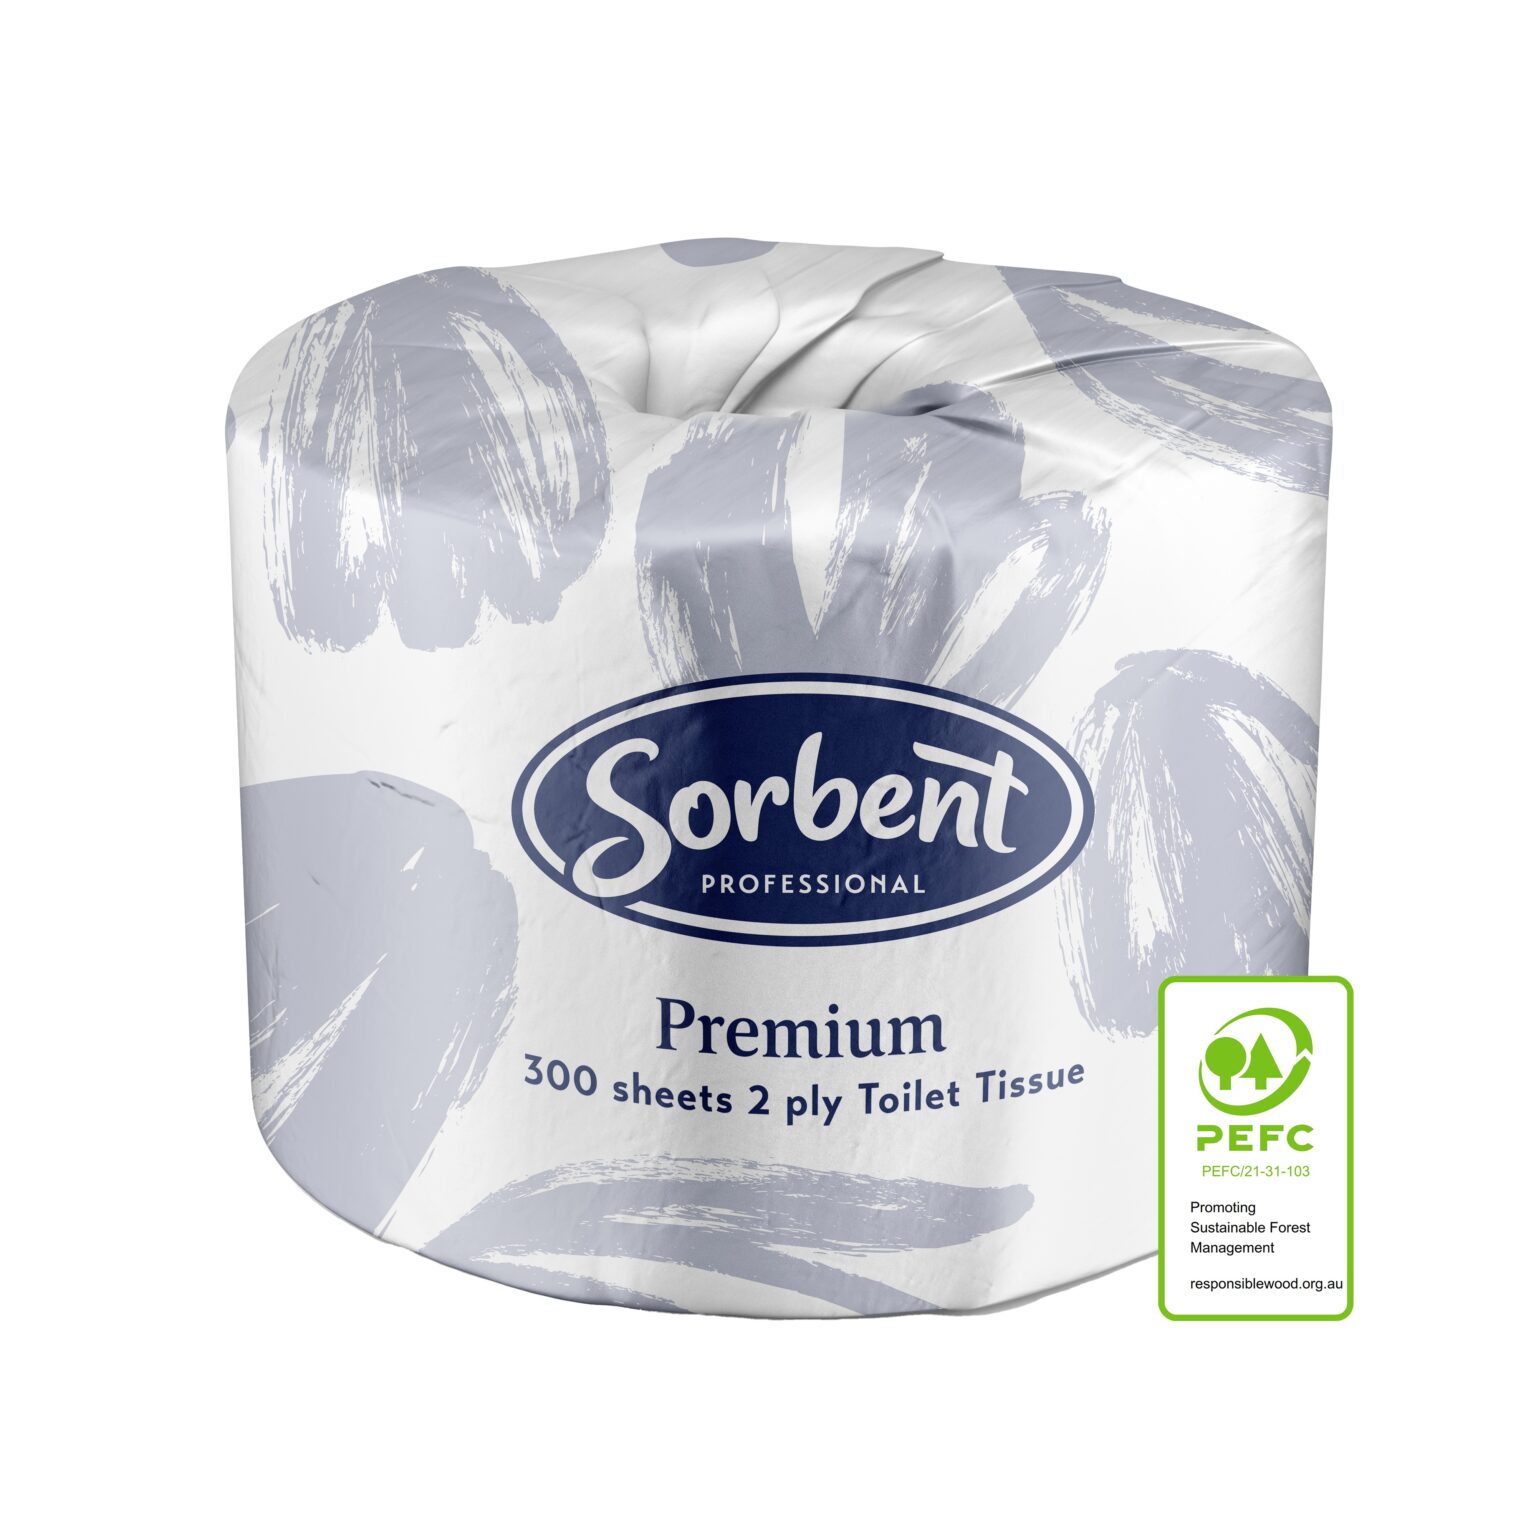 25002_SorbentProfessional_Premium Toilet Tissue 2ply 300s_PEFC